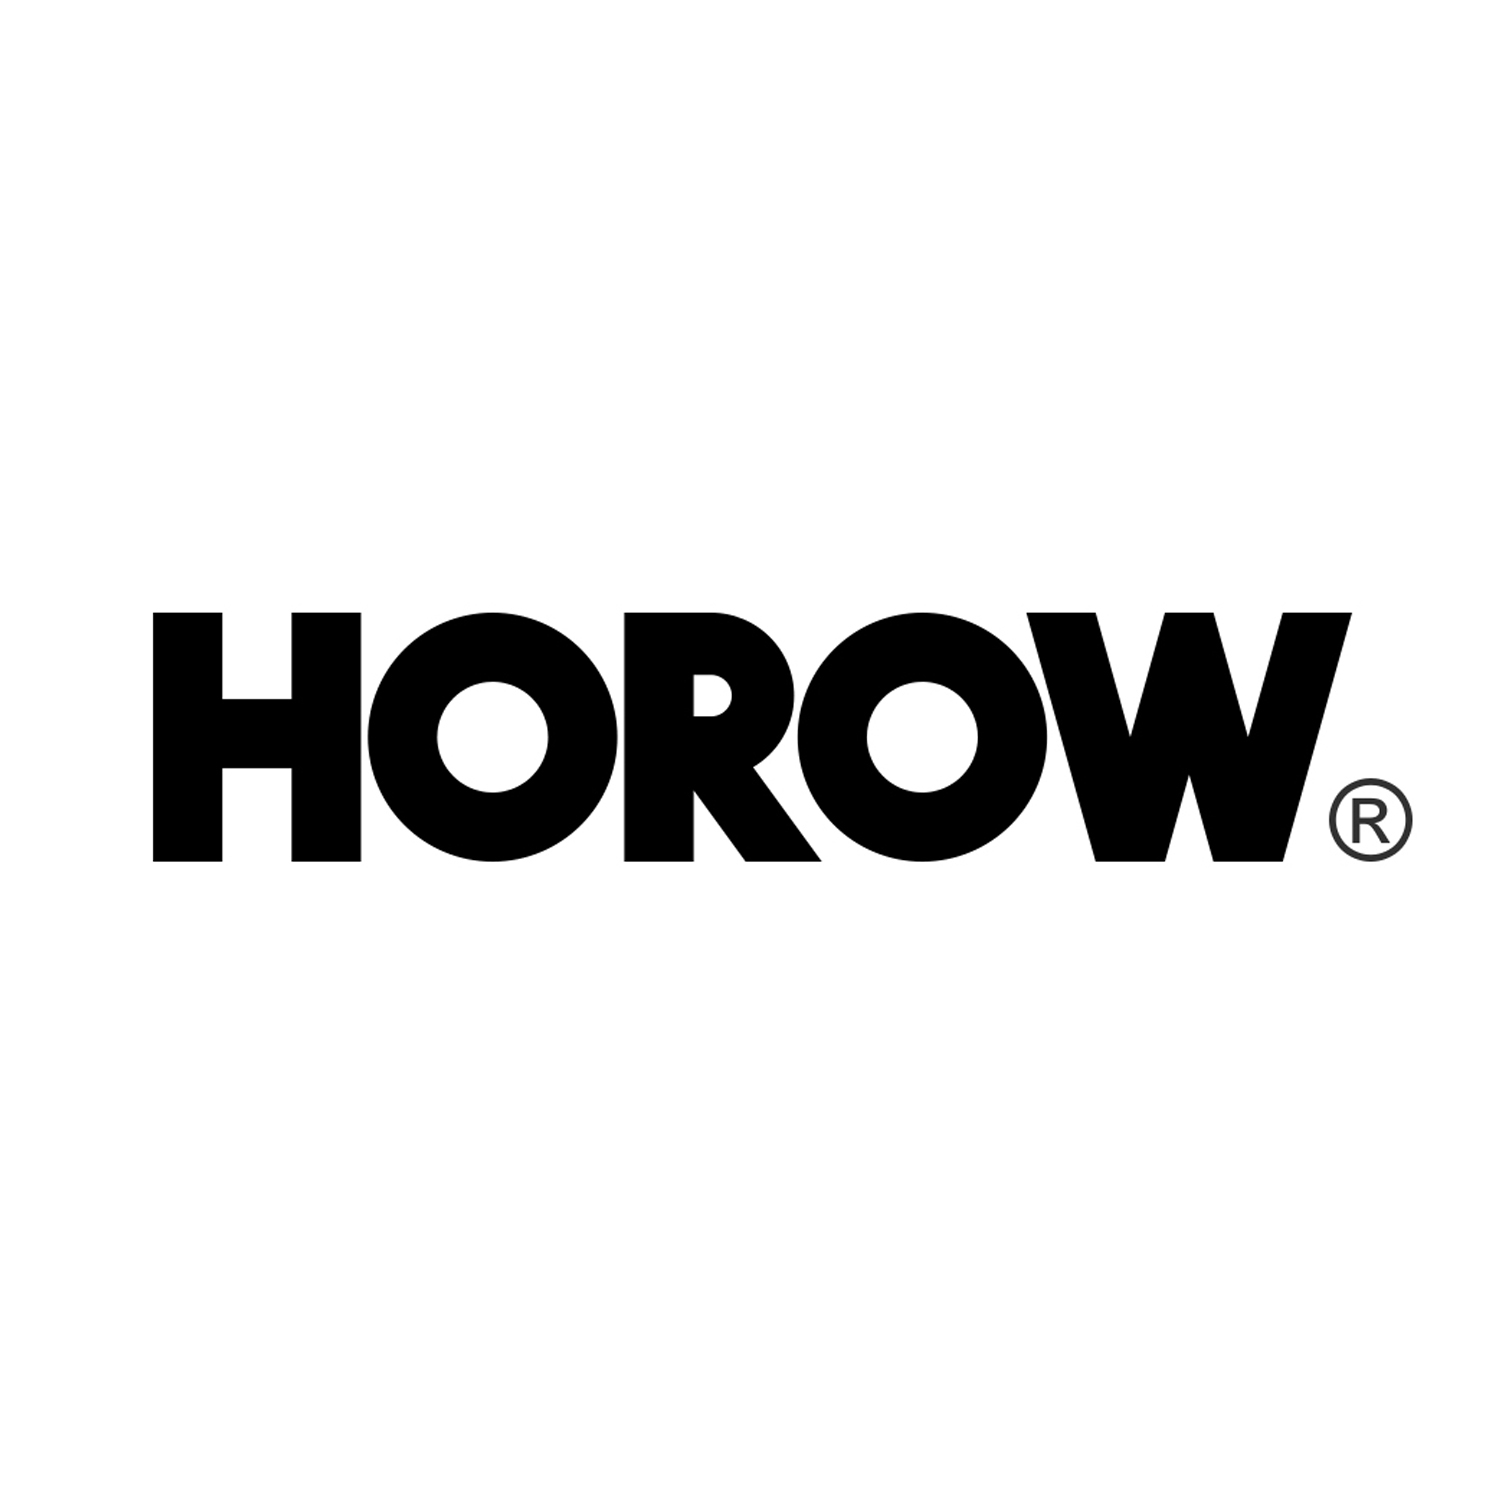 Horow